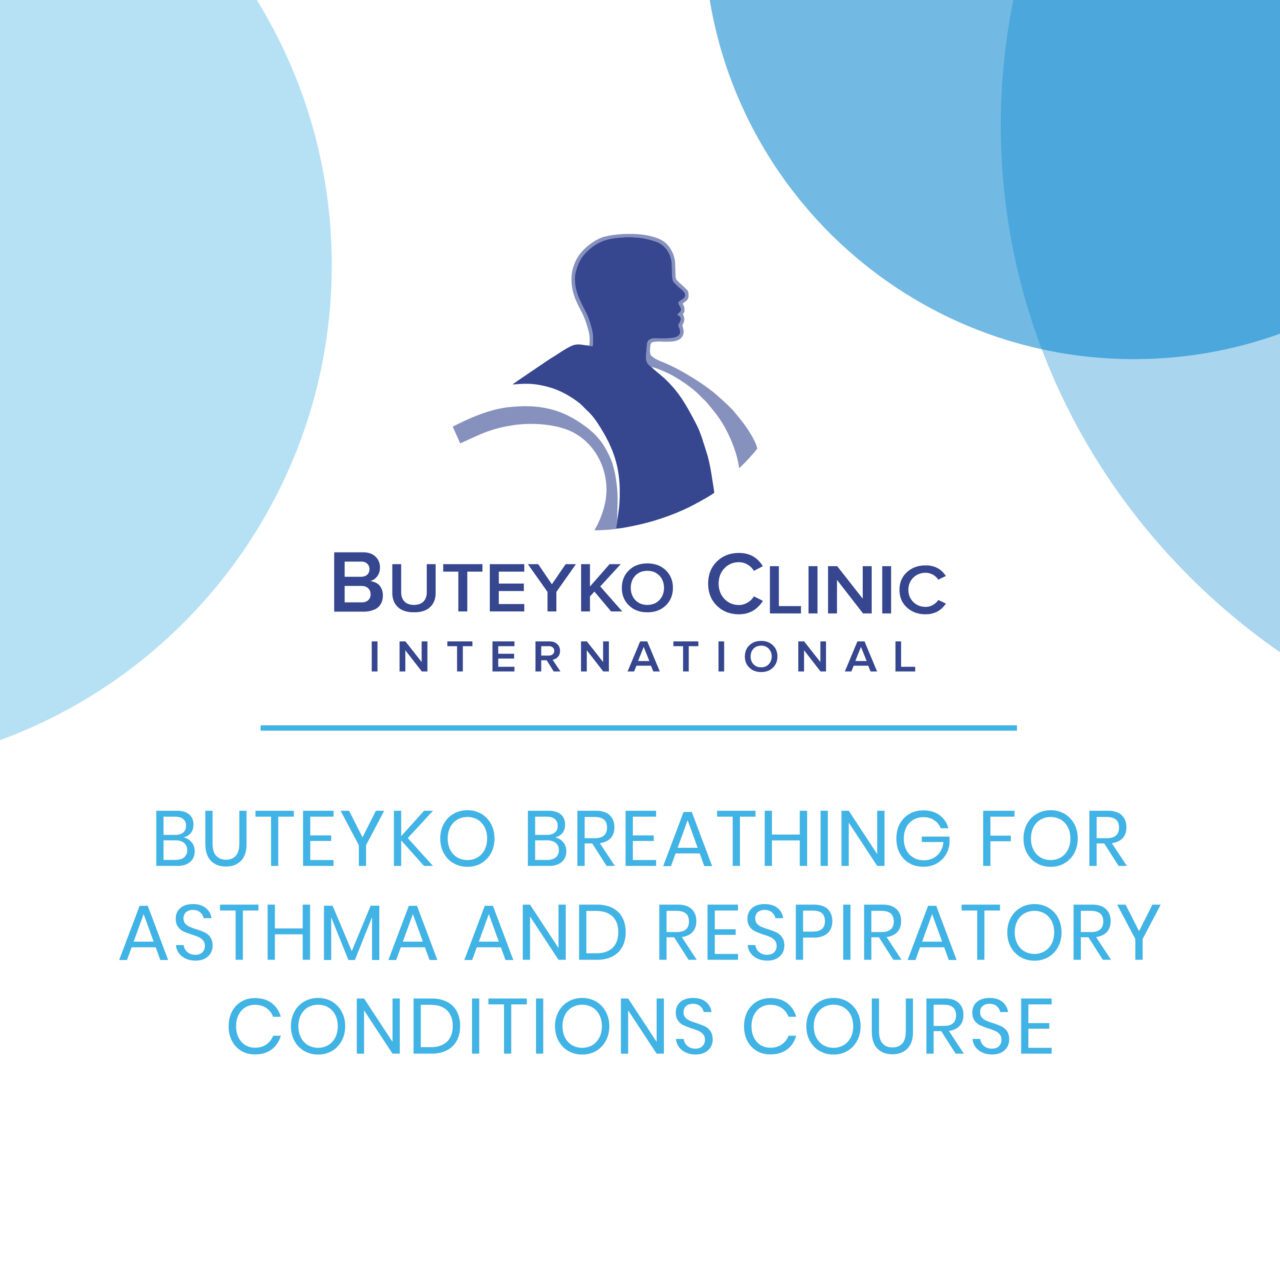 Buteyko Clinic Online Courses Buteyko Clinic International